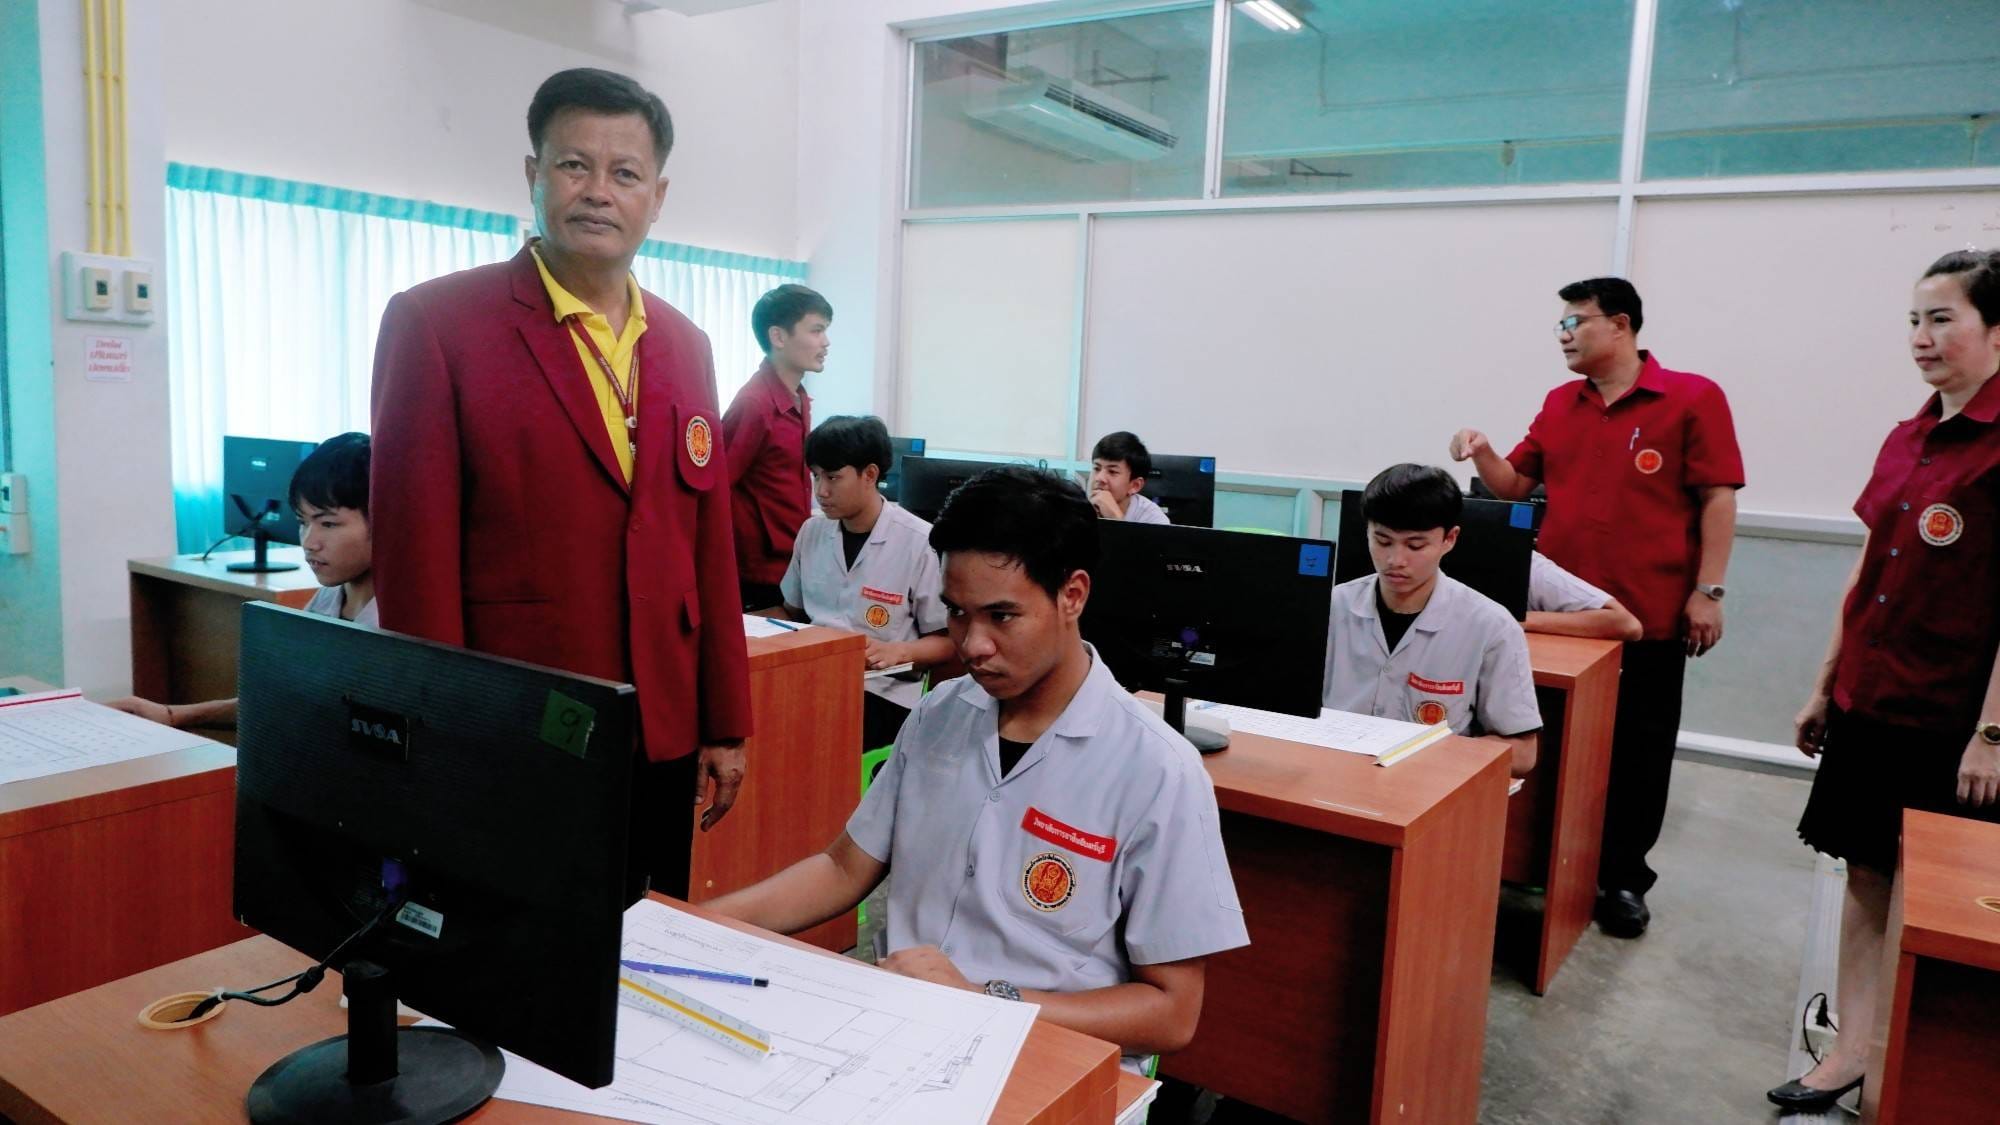 คณะผู้บริหารวิทยาลัยการอาชีพอินทร์บุรี ตรวจเยี่ยมให้กำลังใจนักเรียนนักศึกษาแผนกวิชาช่างไฟฟ้ากำลัง ระดับชั้น ปวช. และระดับชั้น ปวส.ในการแข่งขันทักษะวิชาชีพและทักษะพื้นฐาน ระดับสถานศึกษา ประจำปีการศึกษา 2566